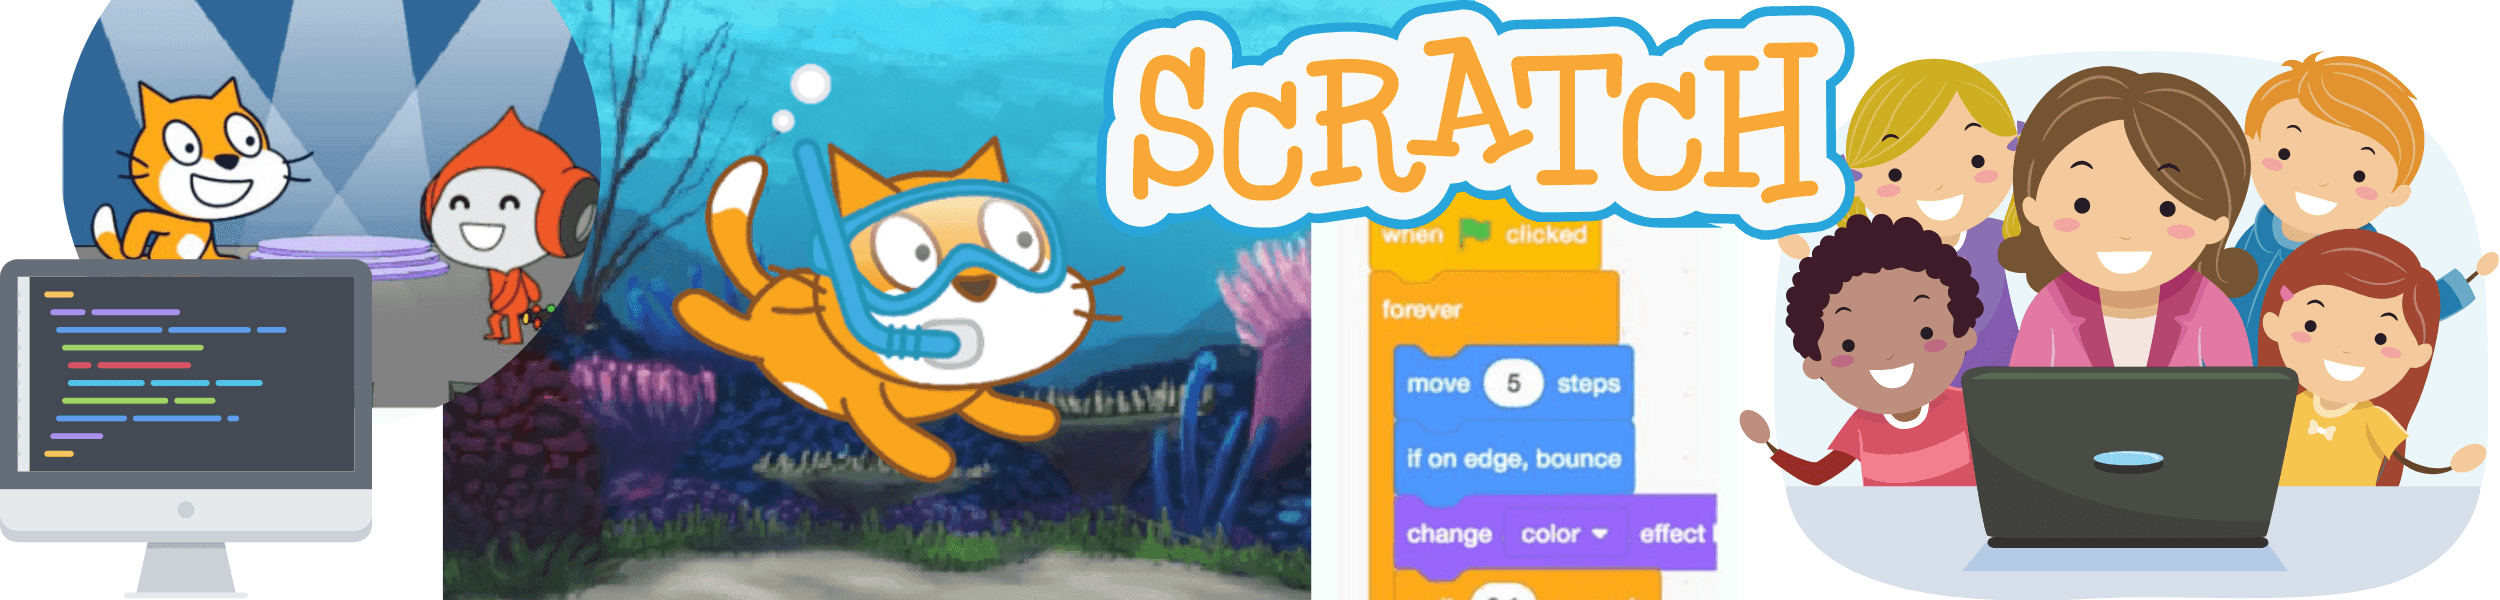 Free Scratch Class